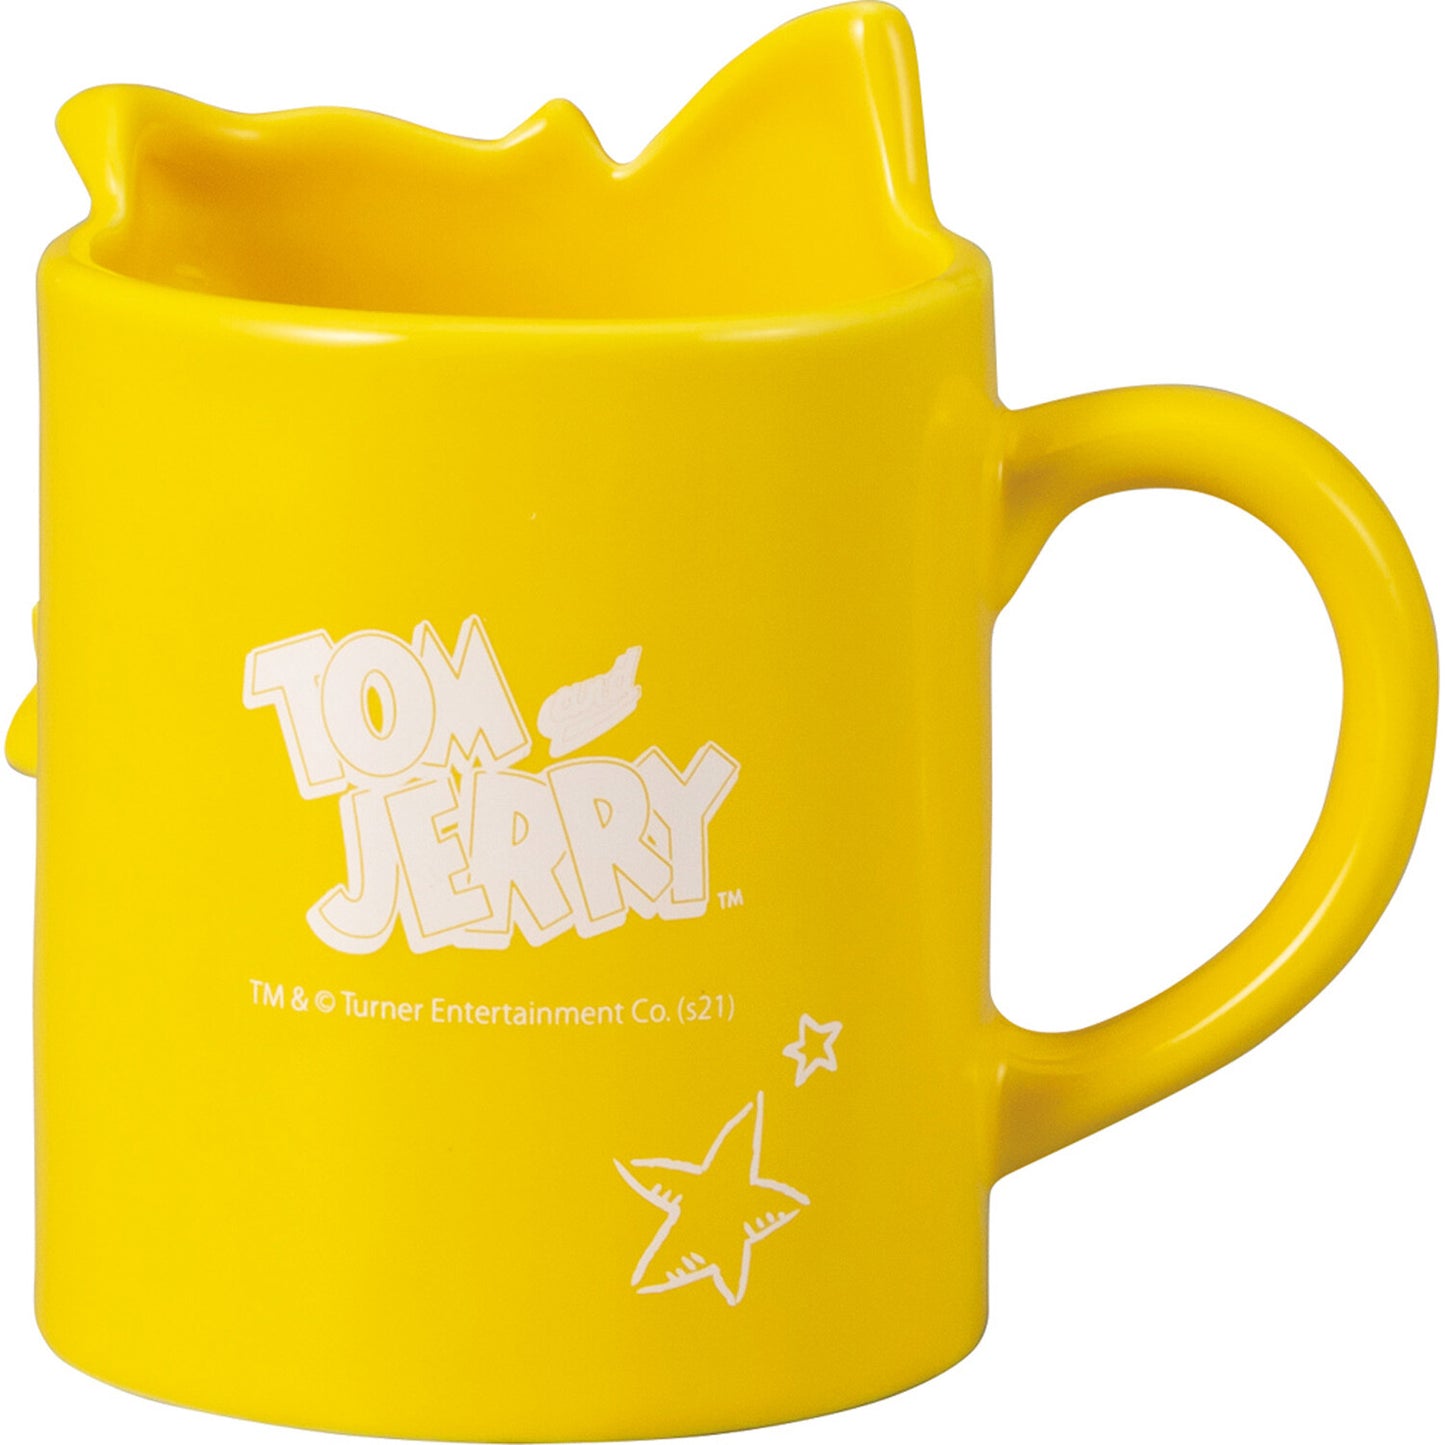 Tom&Jerry Couple Ceramic Mug